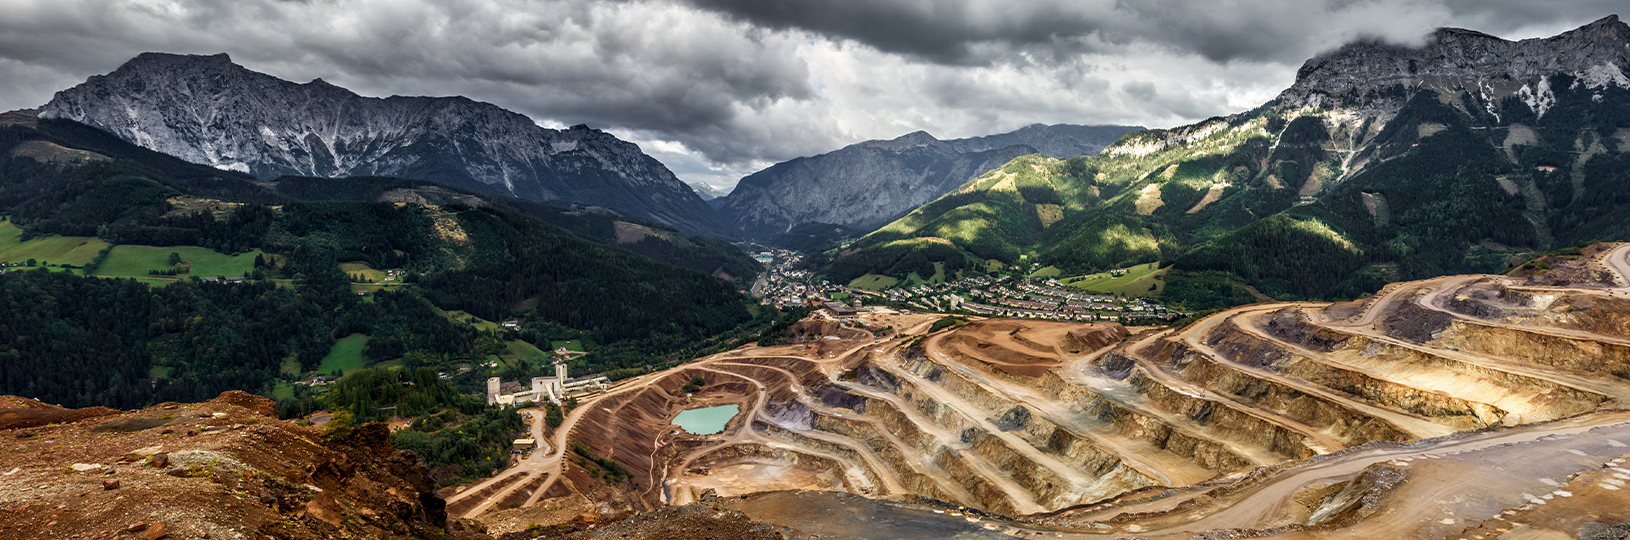 Aerial view of a diamond mine